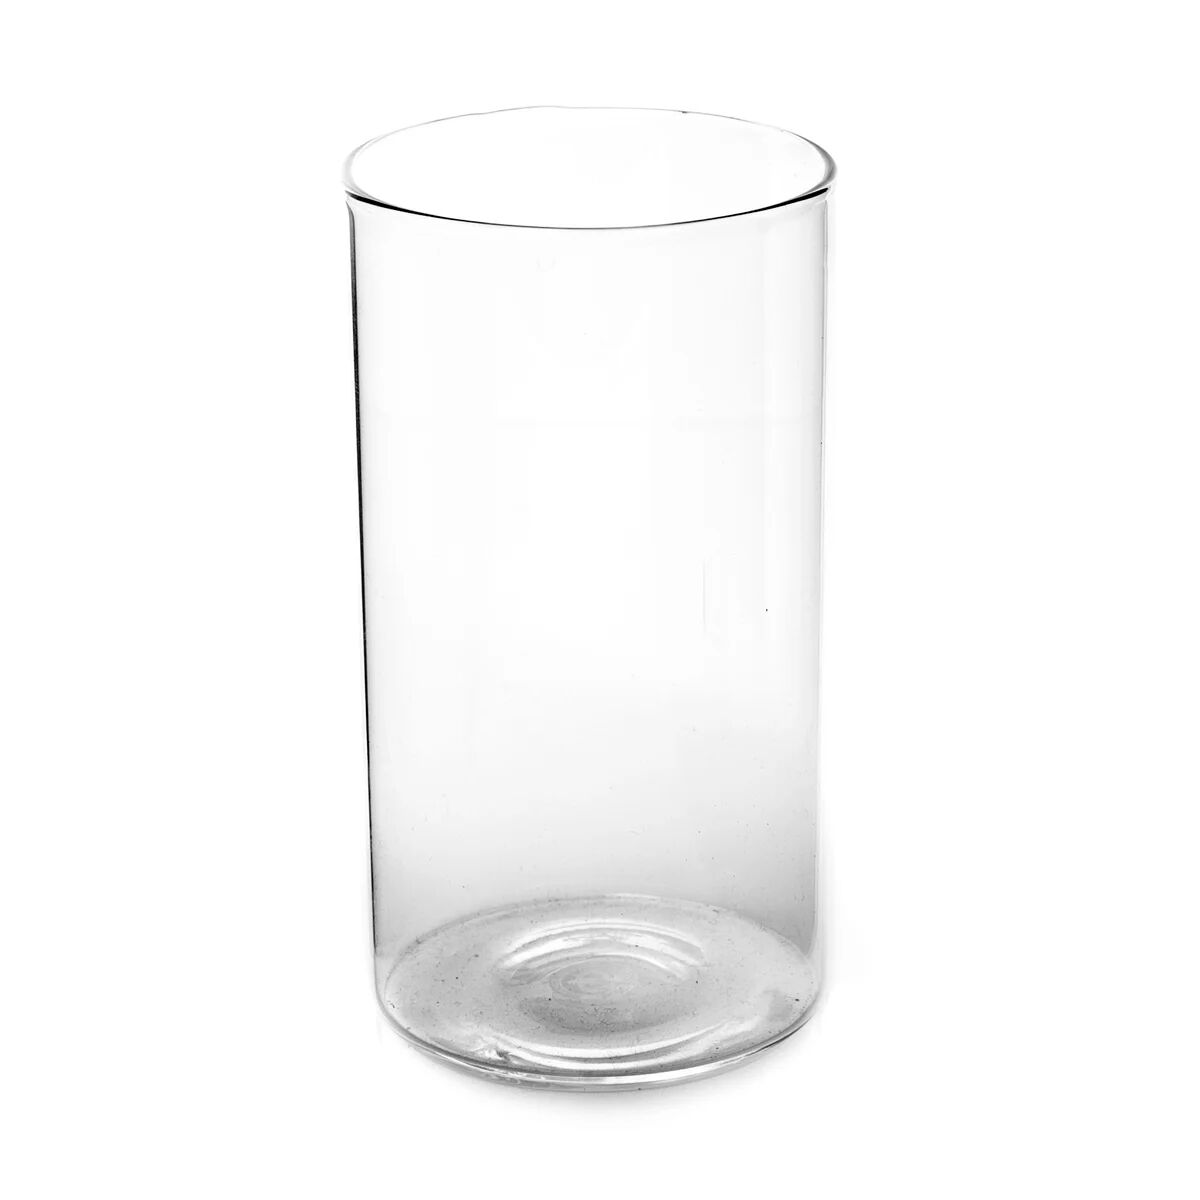 Ørskov glass large